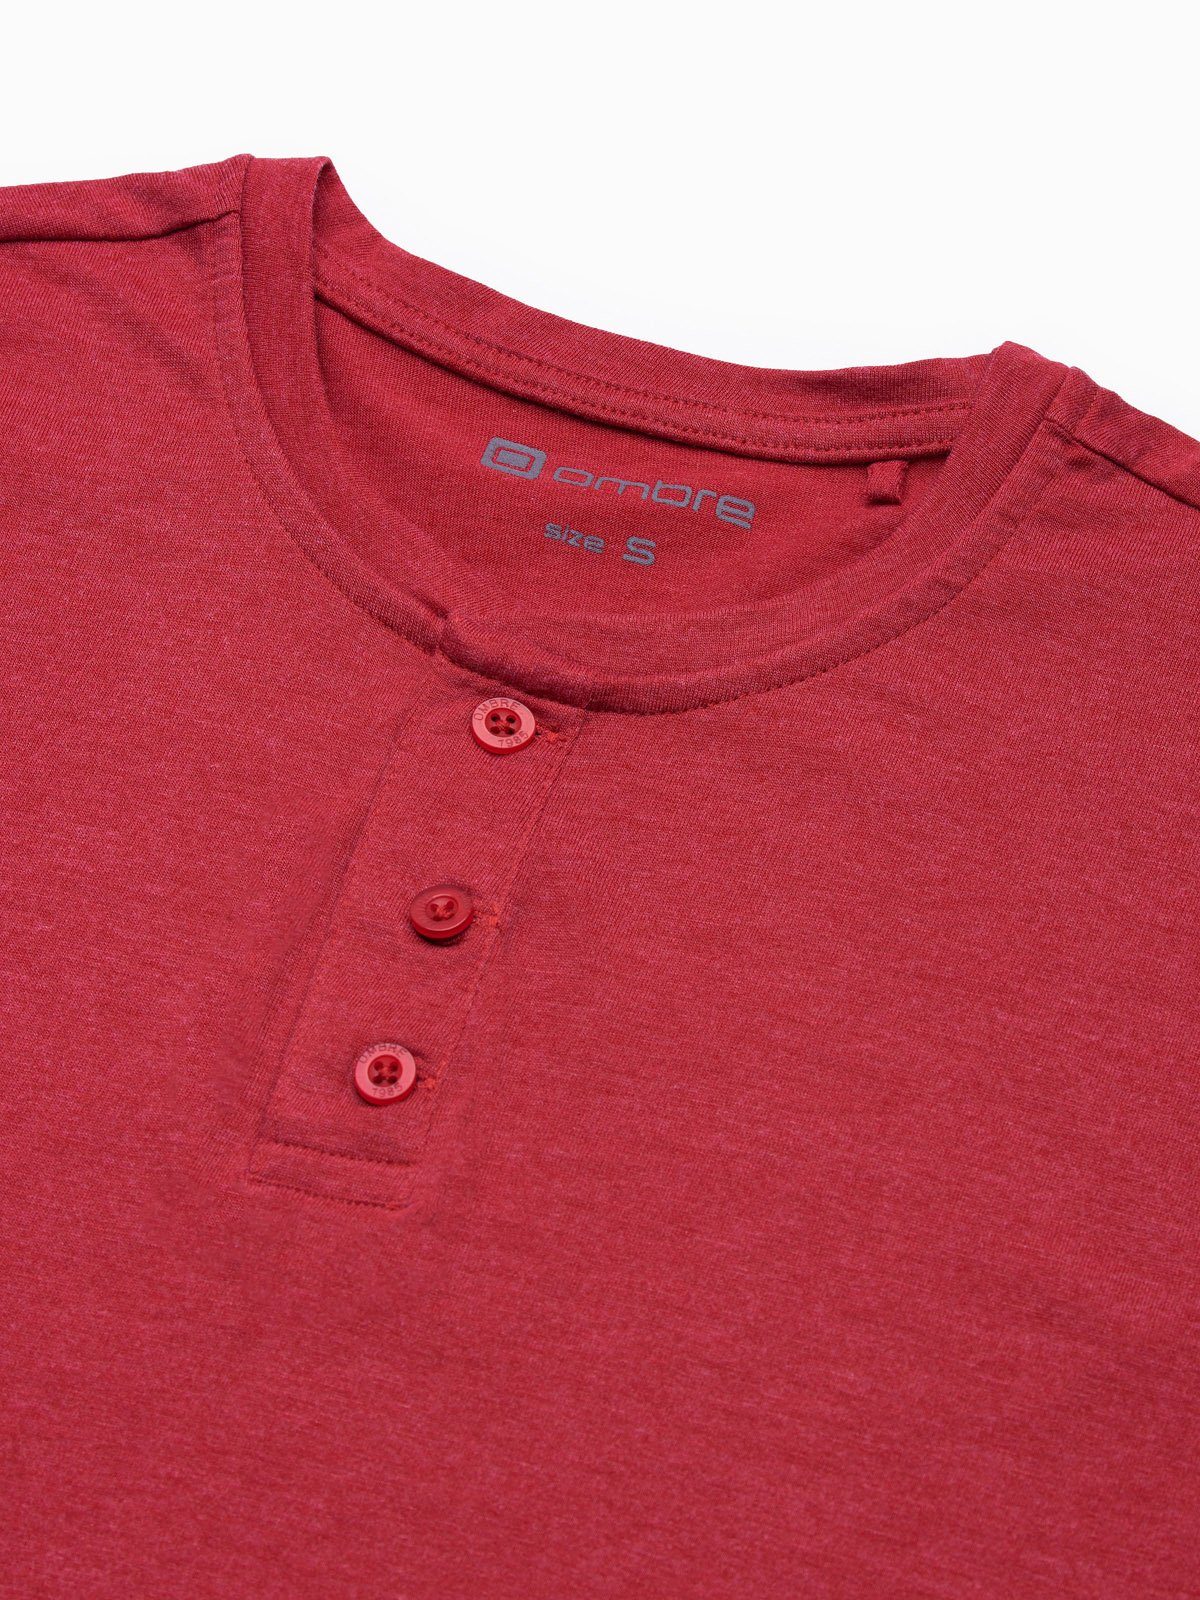 Einfarbiges S1390 Herren-T-Shirt rot M meliert T-Shirt - OMBRE